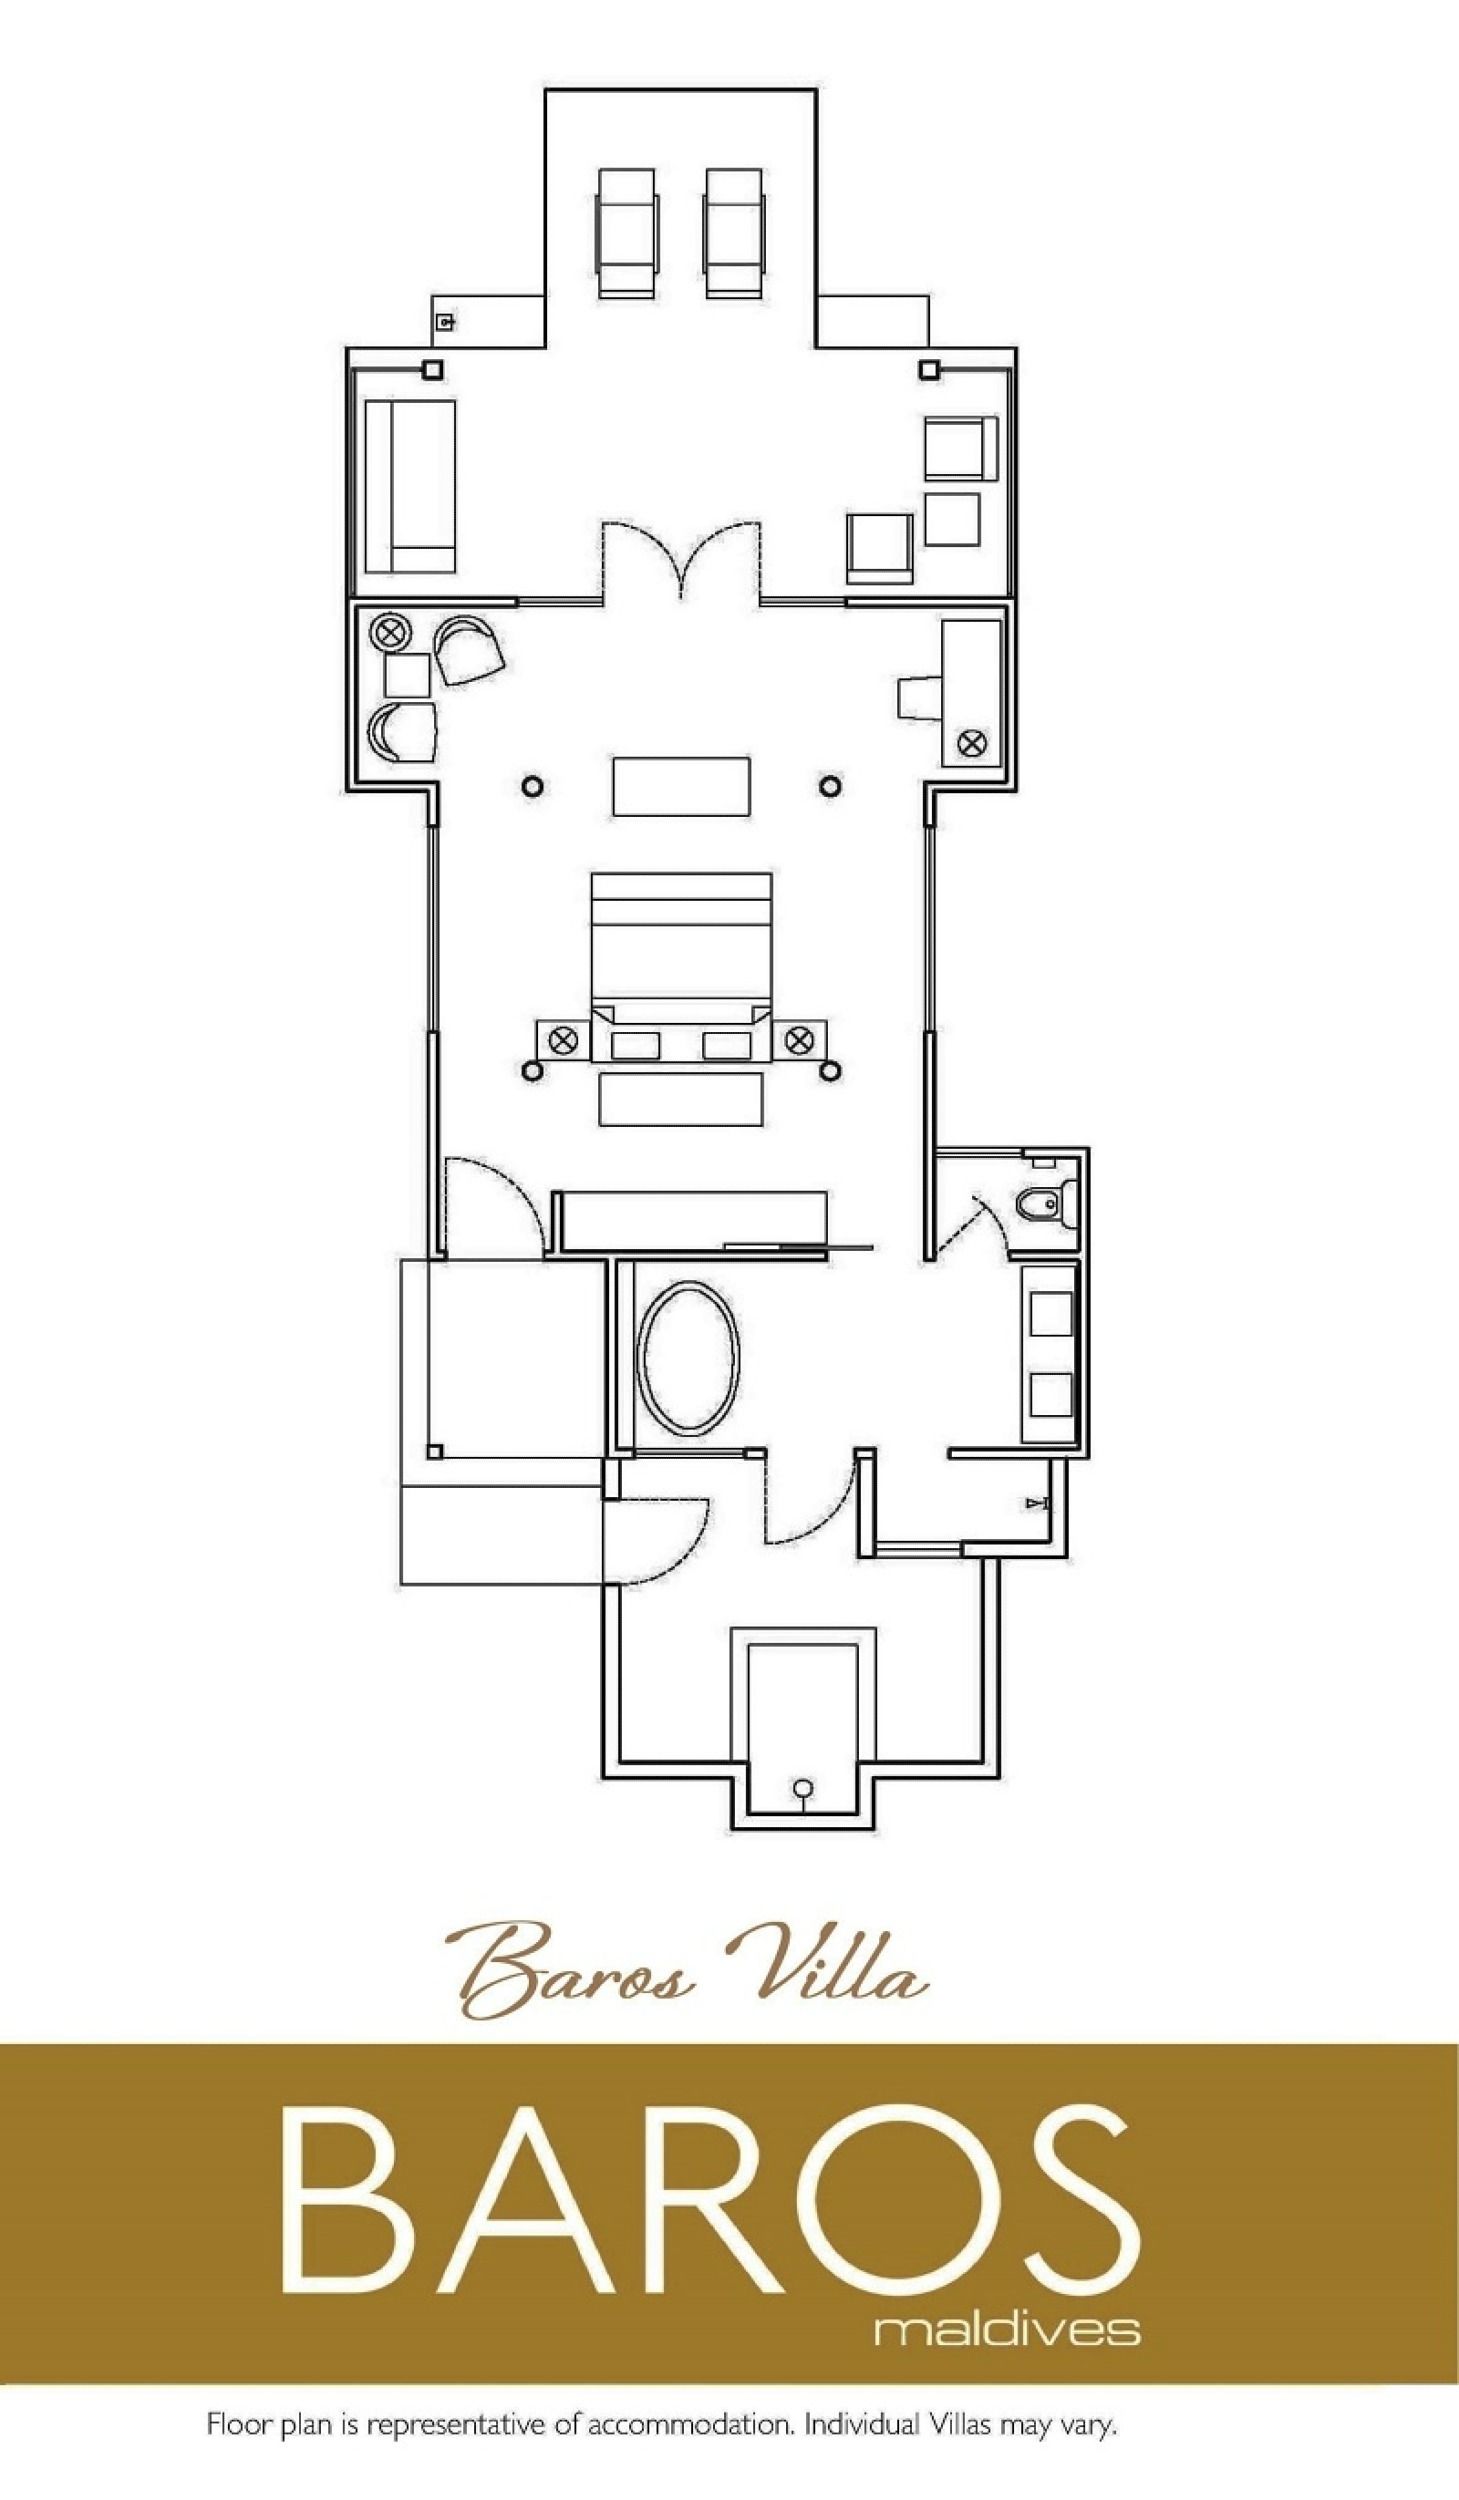 Baros Villa - Floor Plan - Baros Maldives